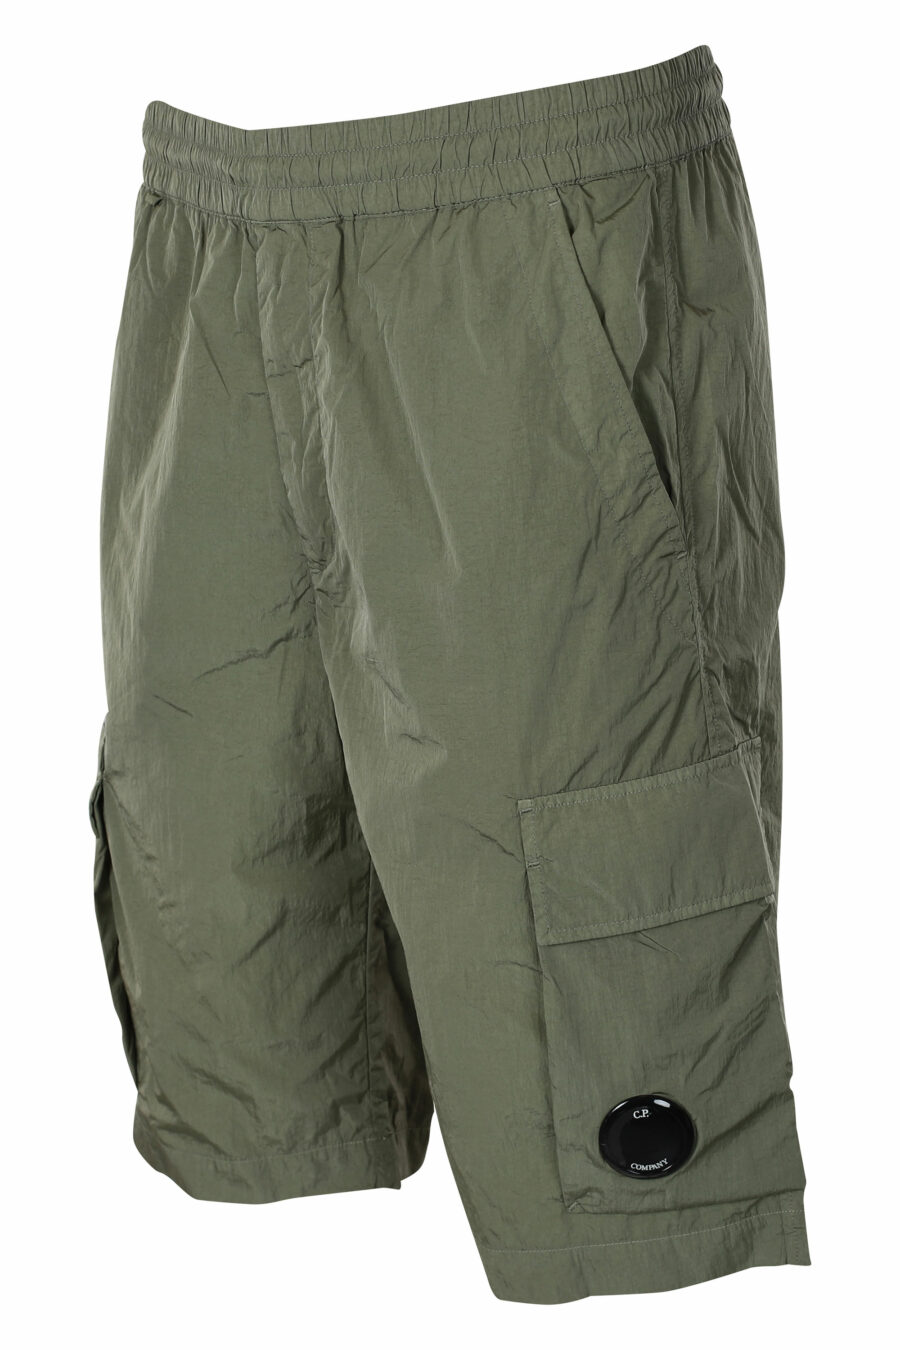 Pantalón corto midi verde militar estilo cargo con minilogo circular - IMG 9585